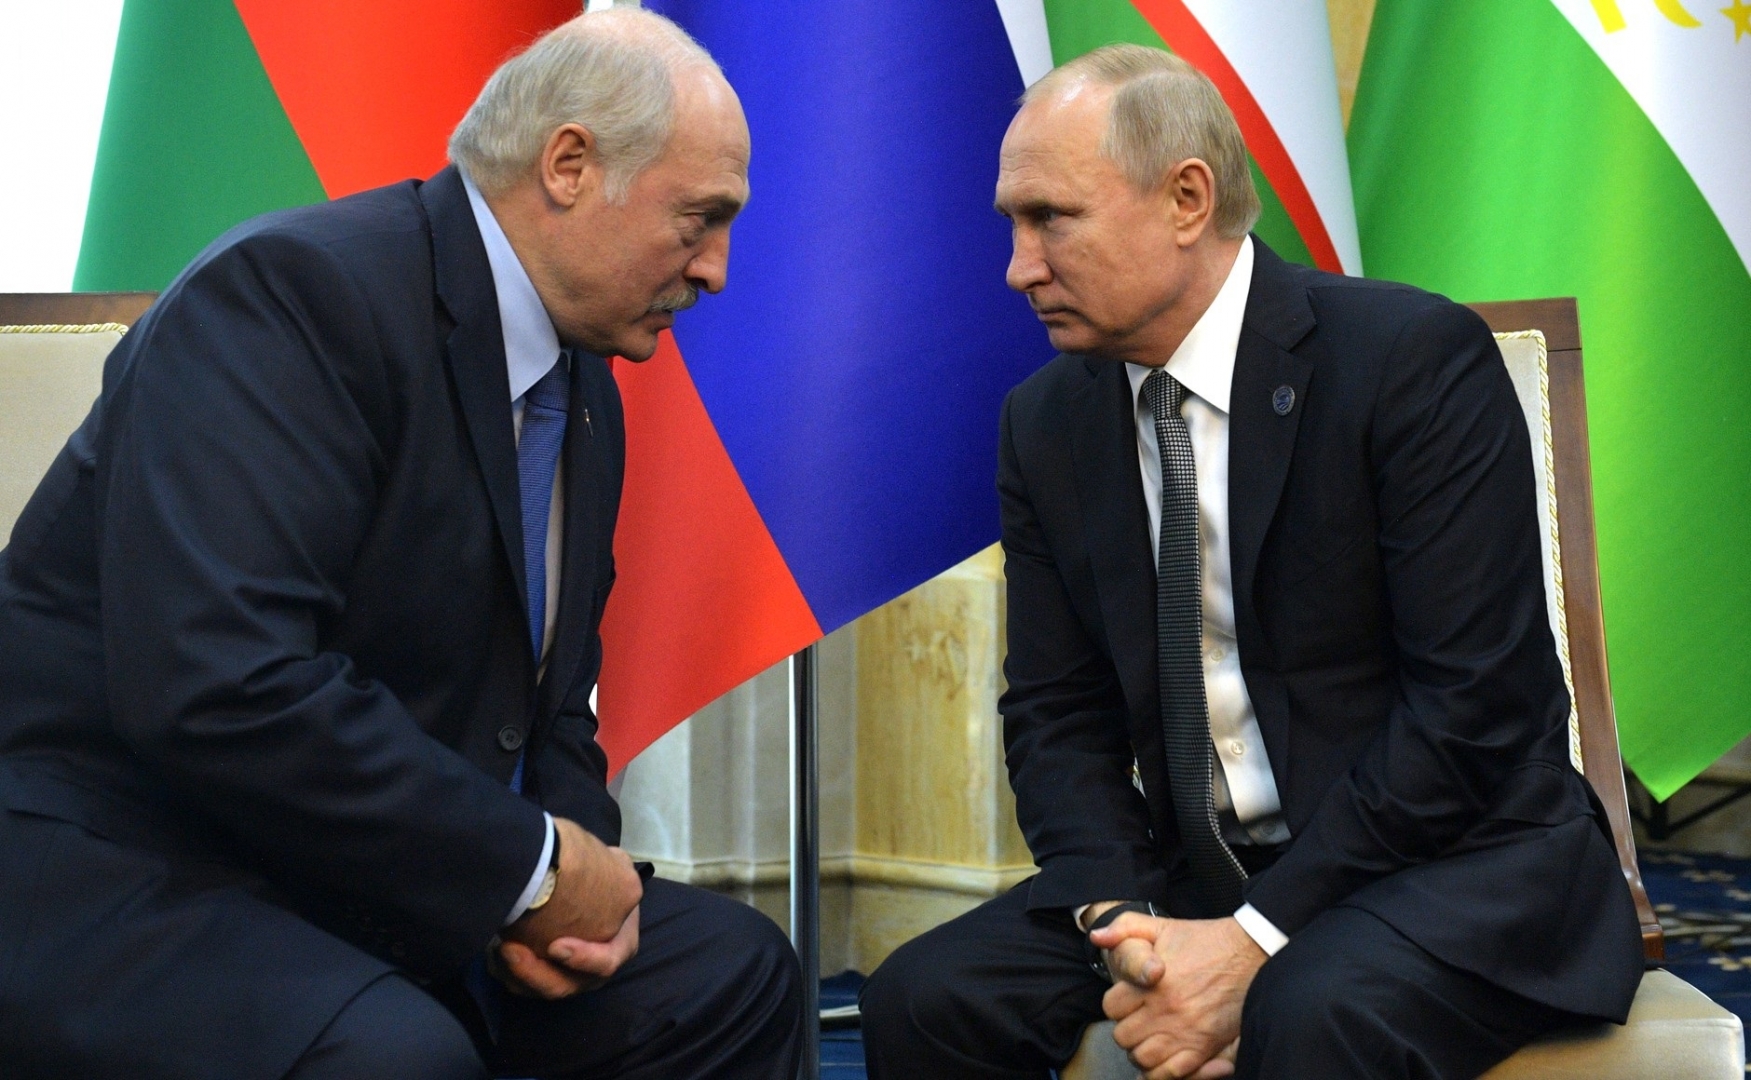 Лукашенко и Путин подтвердили, что в случае обострения ситуации в Беларуси будут реагировать согласно положениям Договора о коллективной безопасности